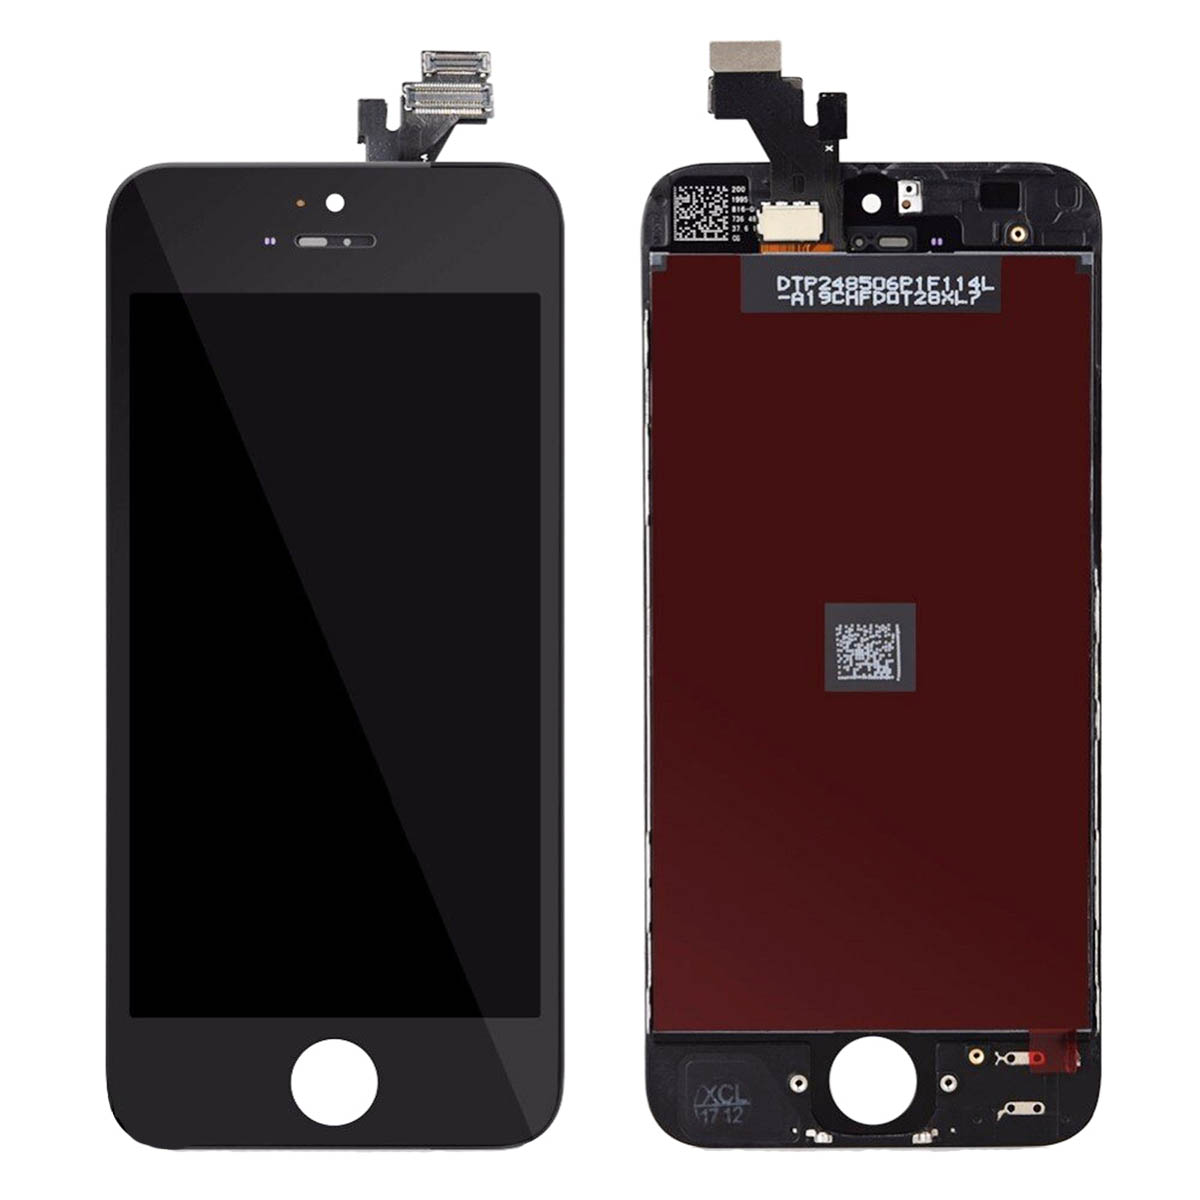 Дисплей в сборе с тачскрином для APPLE iPhone 5G, тип дисплея AAA, цвет черный.